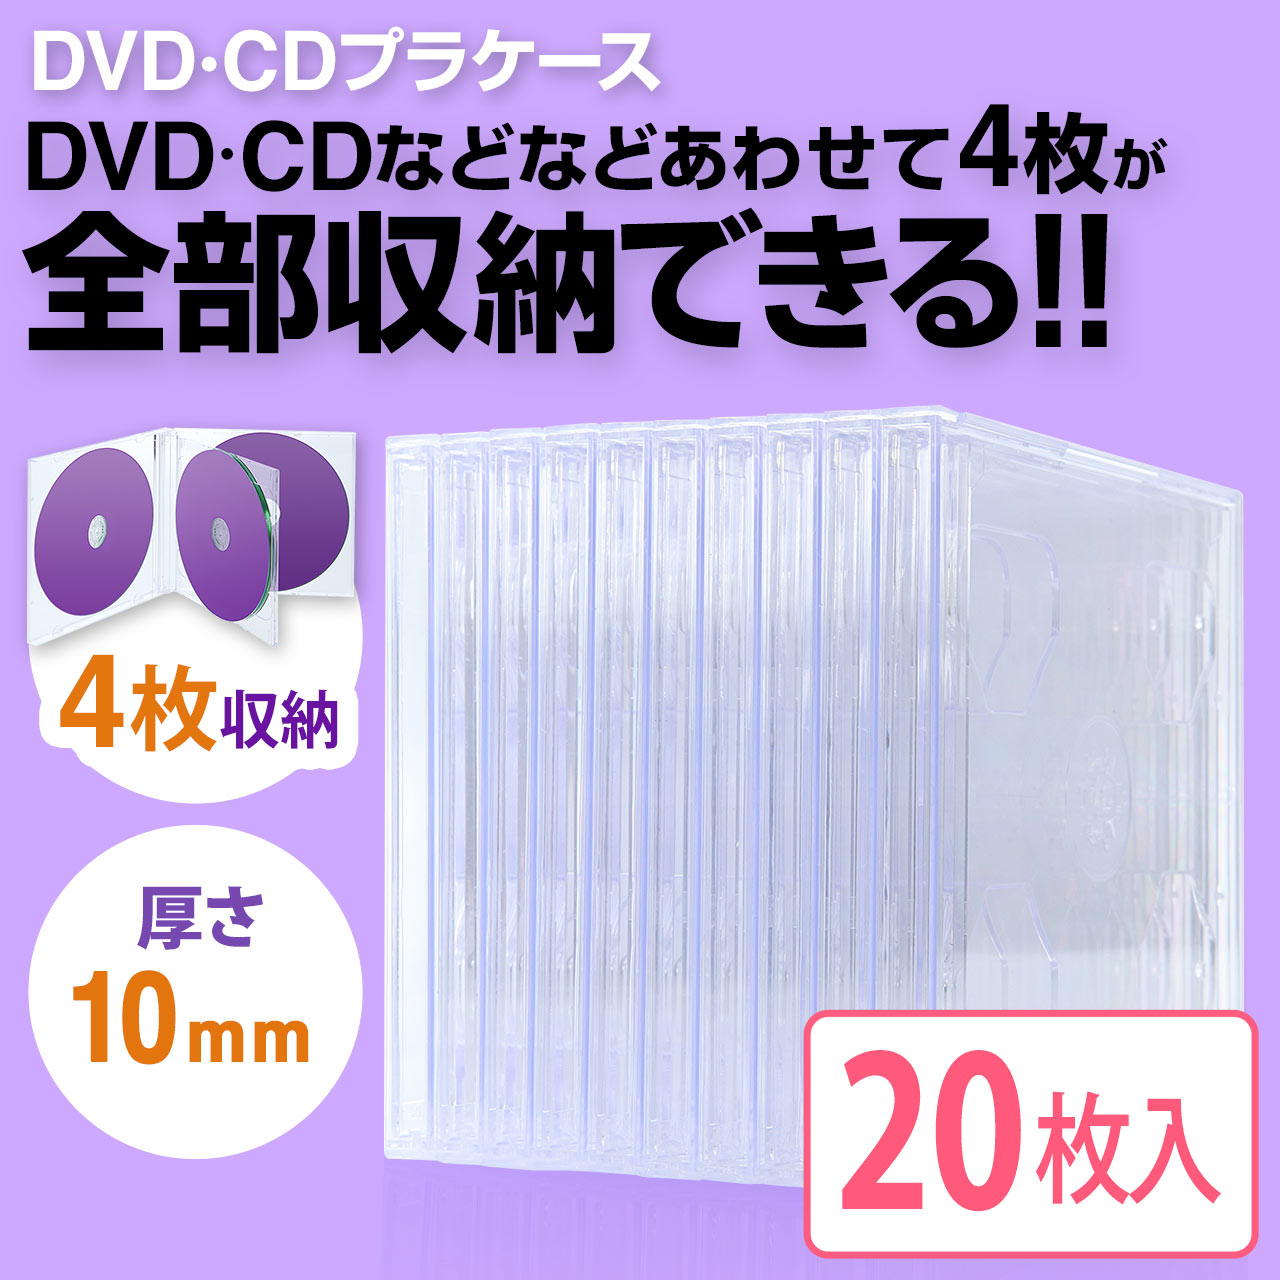 個セット Dvd Cdプラケース 4枚収納 10mm厚 クリア 2 Fcd042c の通販ならサンワダイレクト